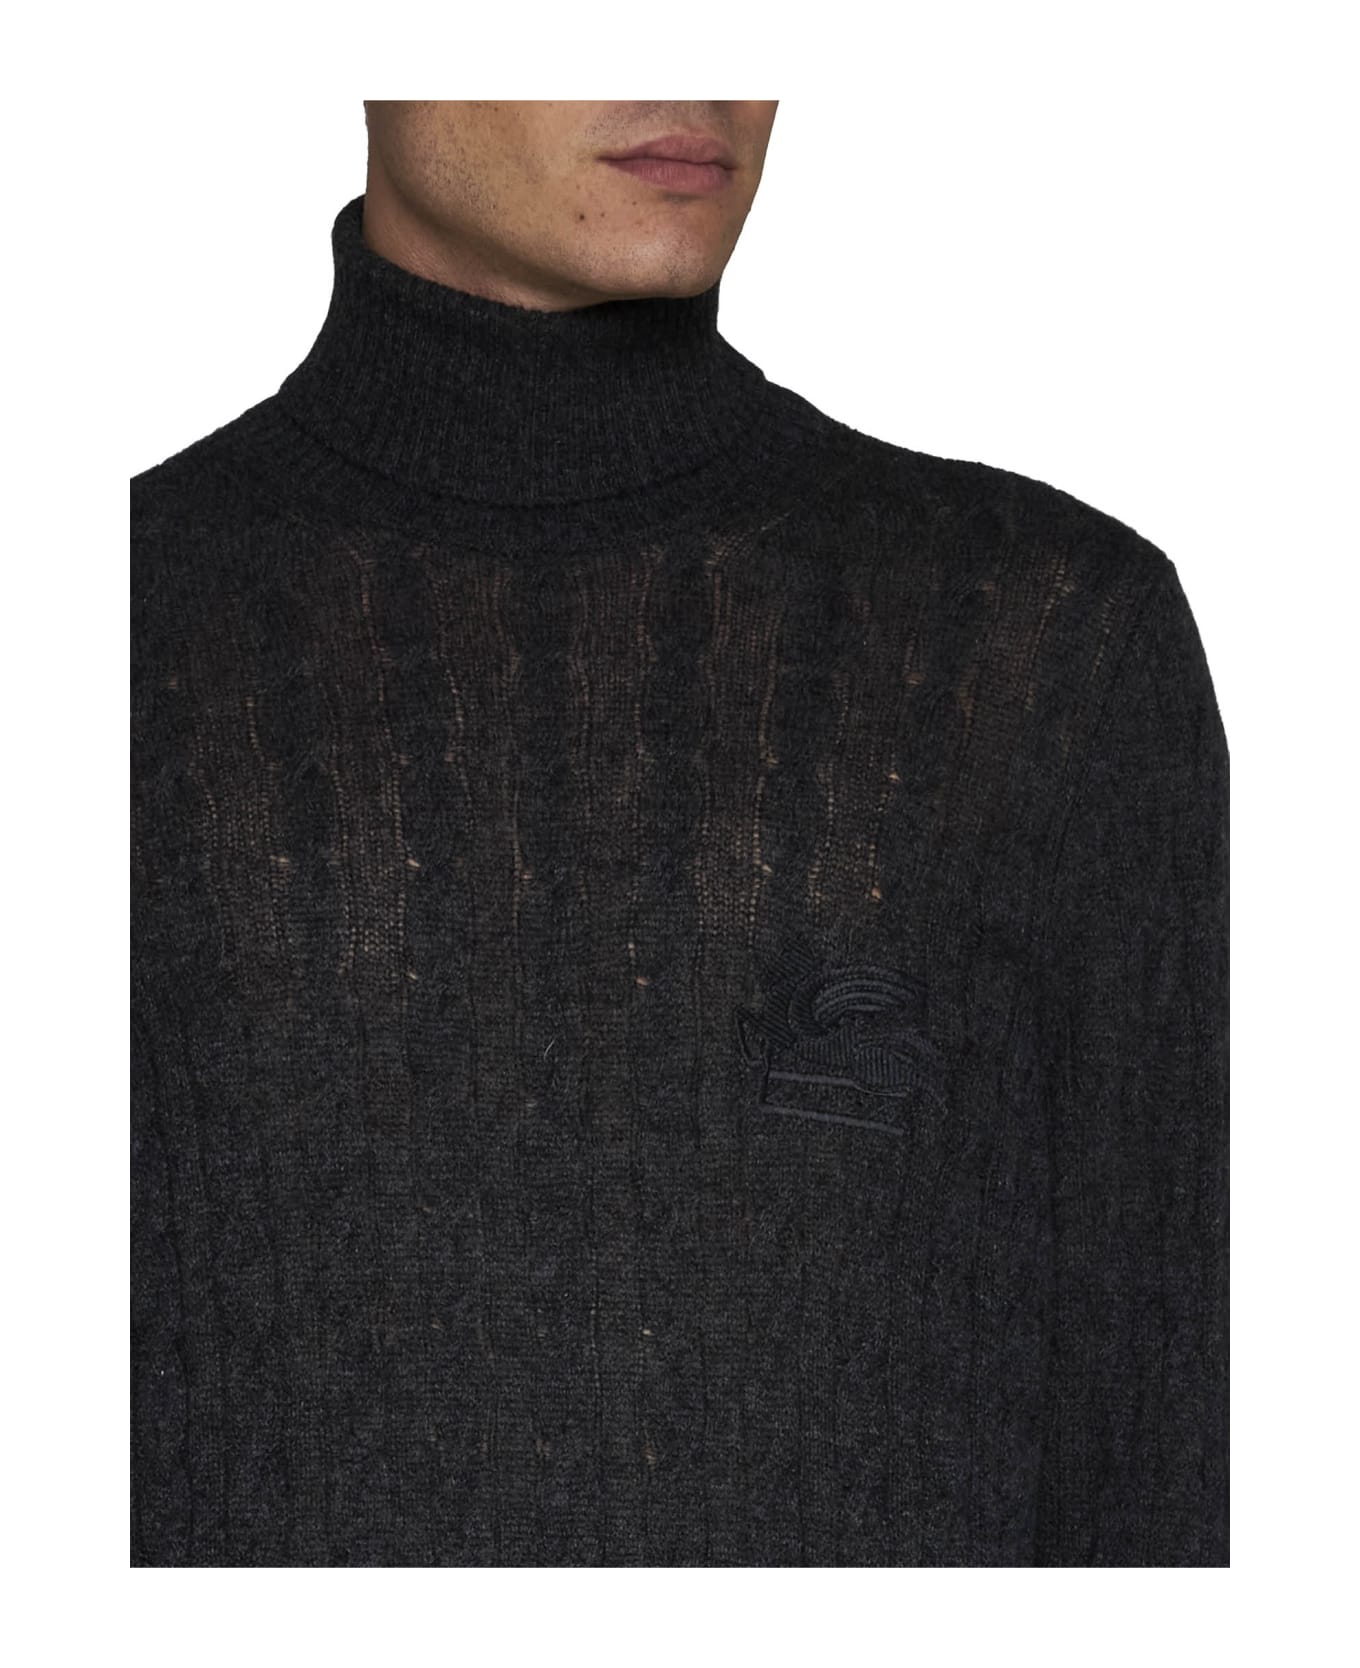 Etro Sweater - Grey